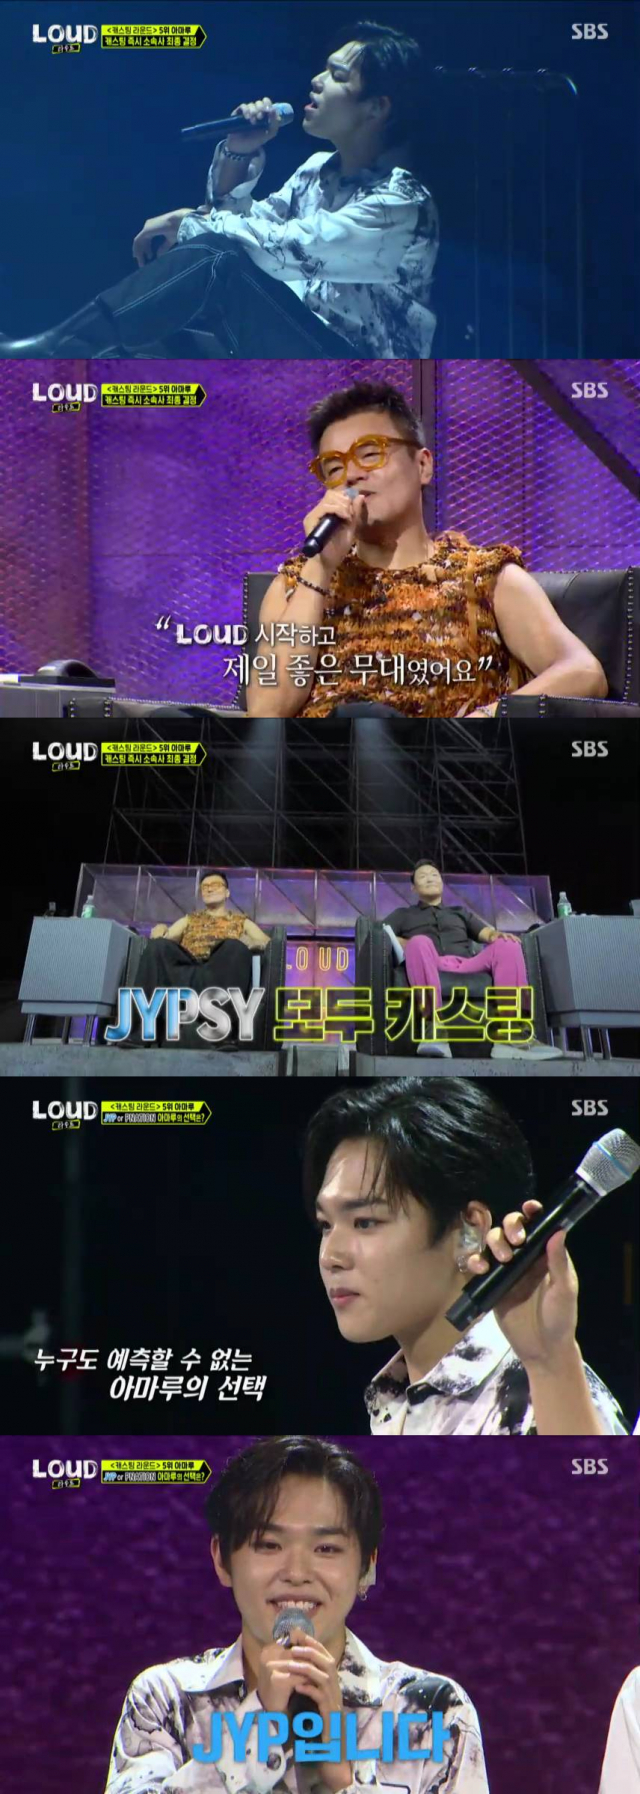 지난 7일 방영된 SBS ‘라우드’의 한 장면. /사진 제공=SBS